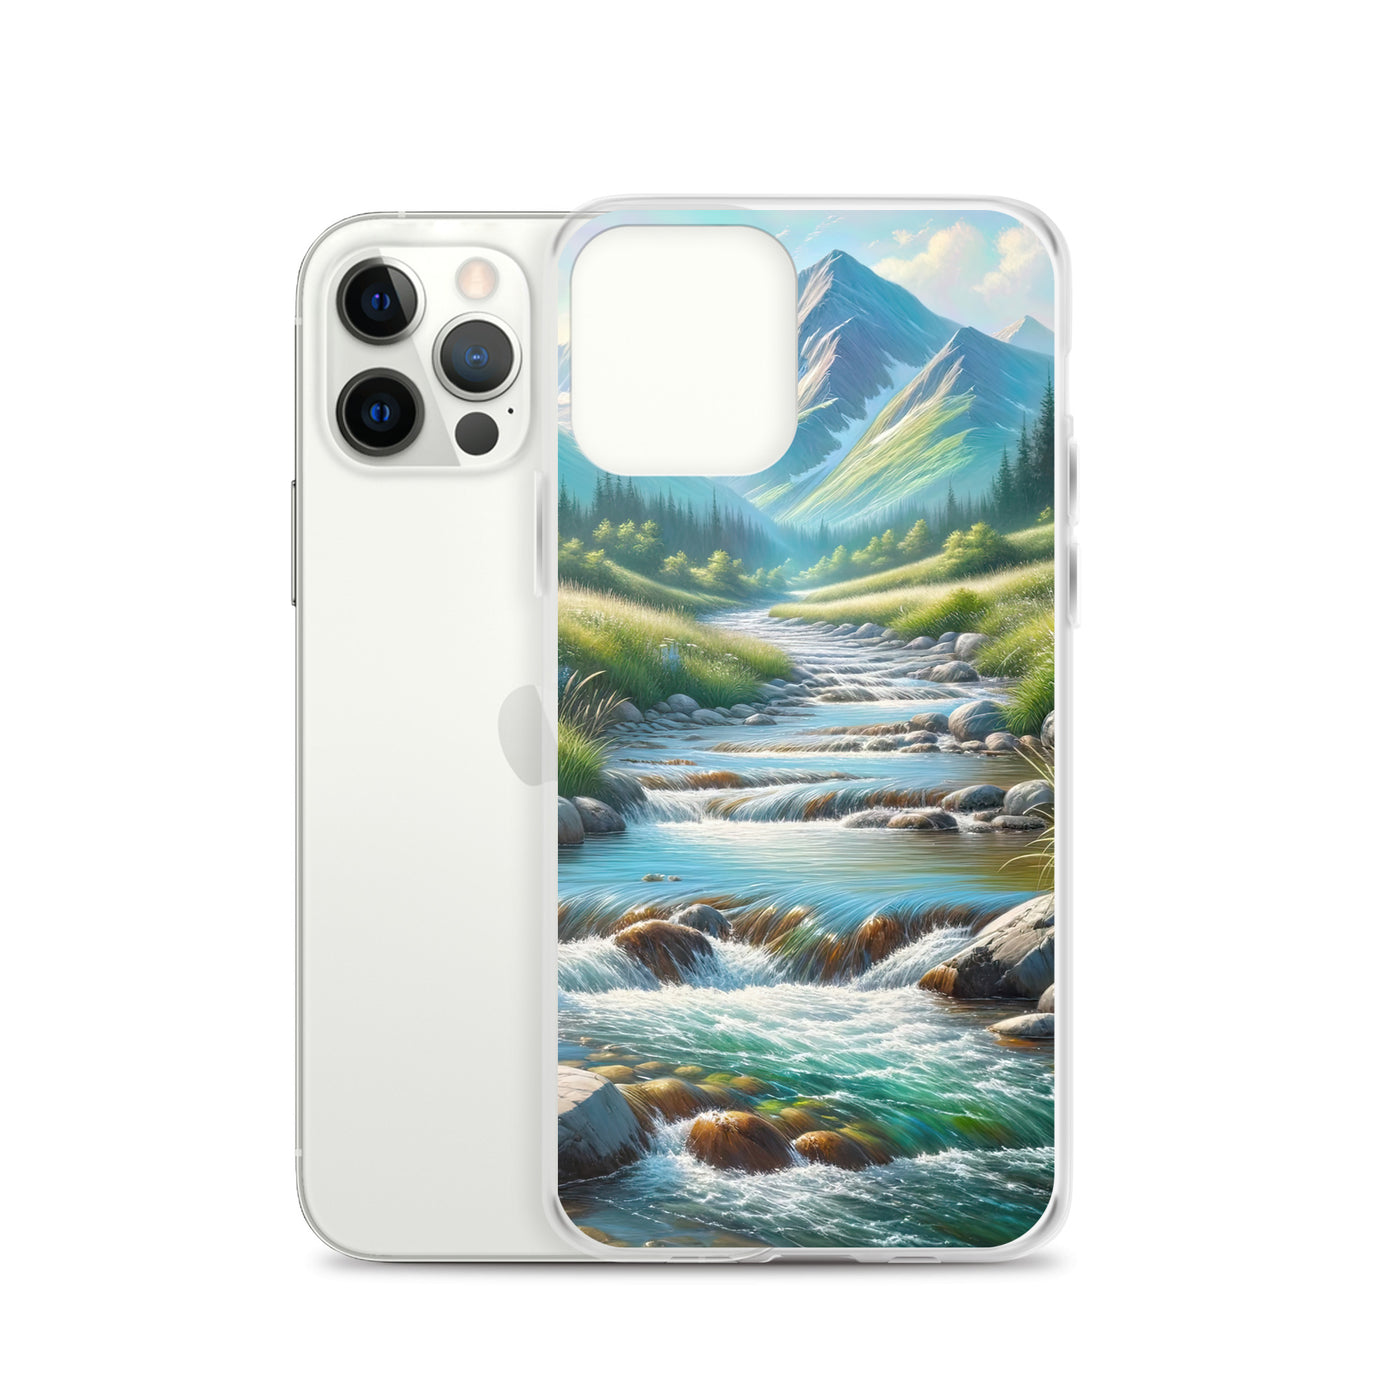 Sanfter Gebirgsbach in Ölgemälde, klares Wasser über glatten Felsen - iPhone Schutzhülle (durchsichtig) berge xxx yyy zzz